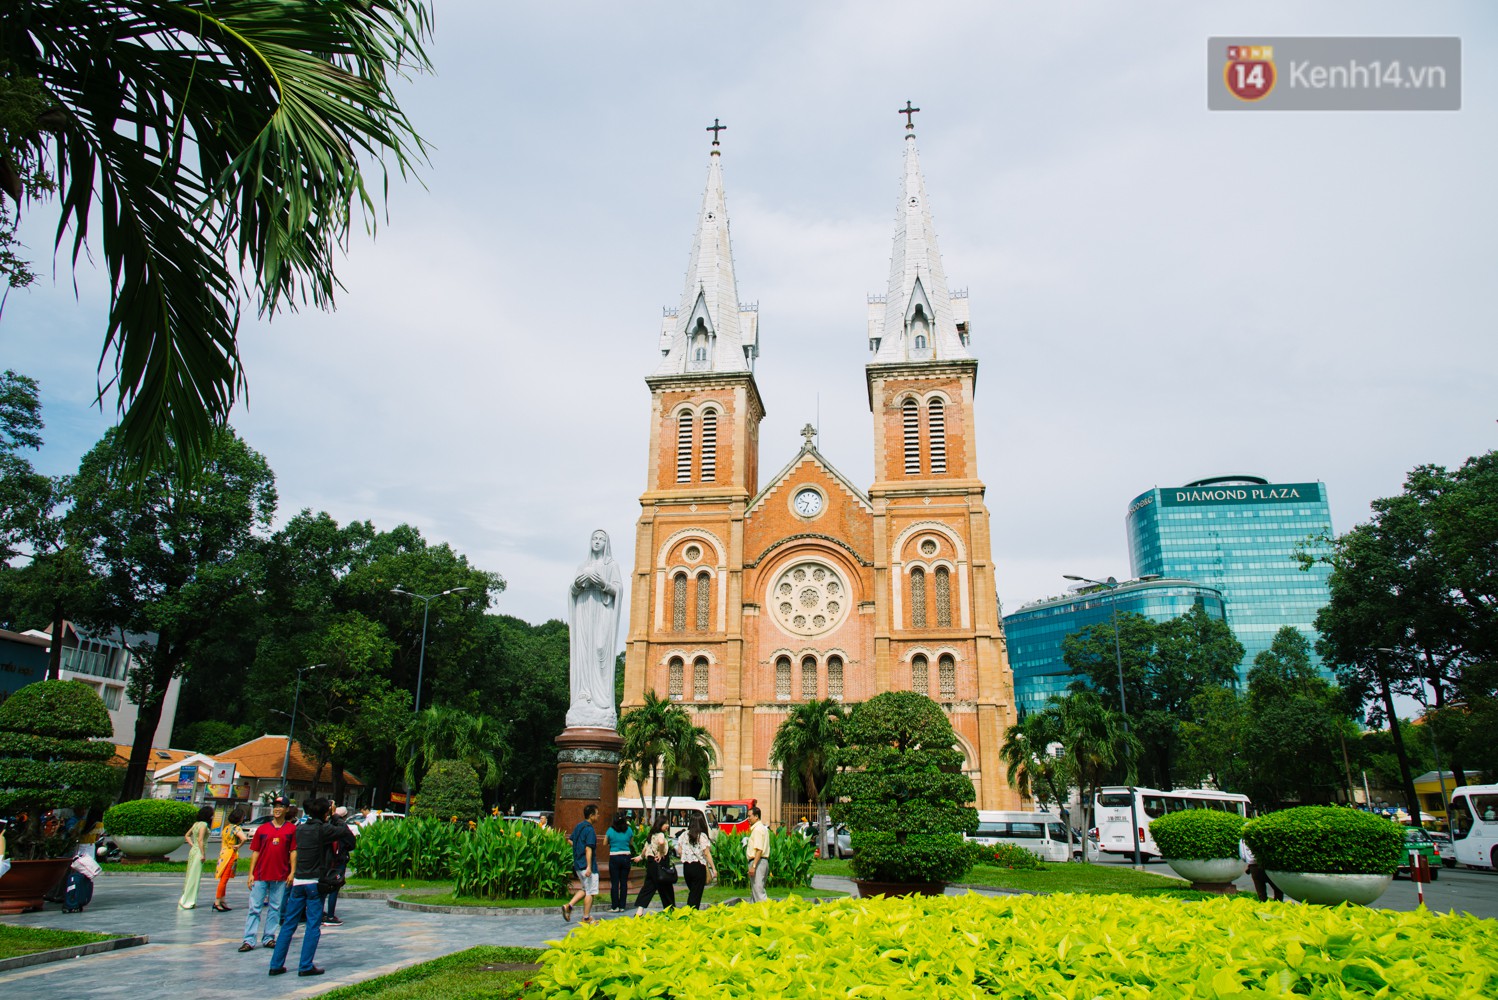 Vì sao Sài Gòn có rất nhiều chợ mang tên cây cỏ kỳ lạ? - Ảnh 1.